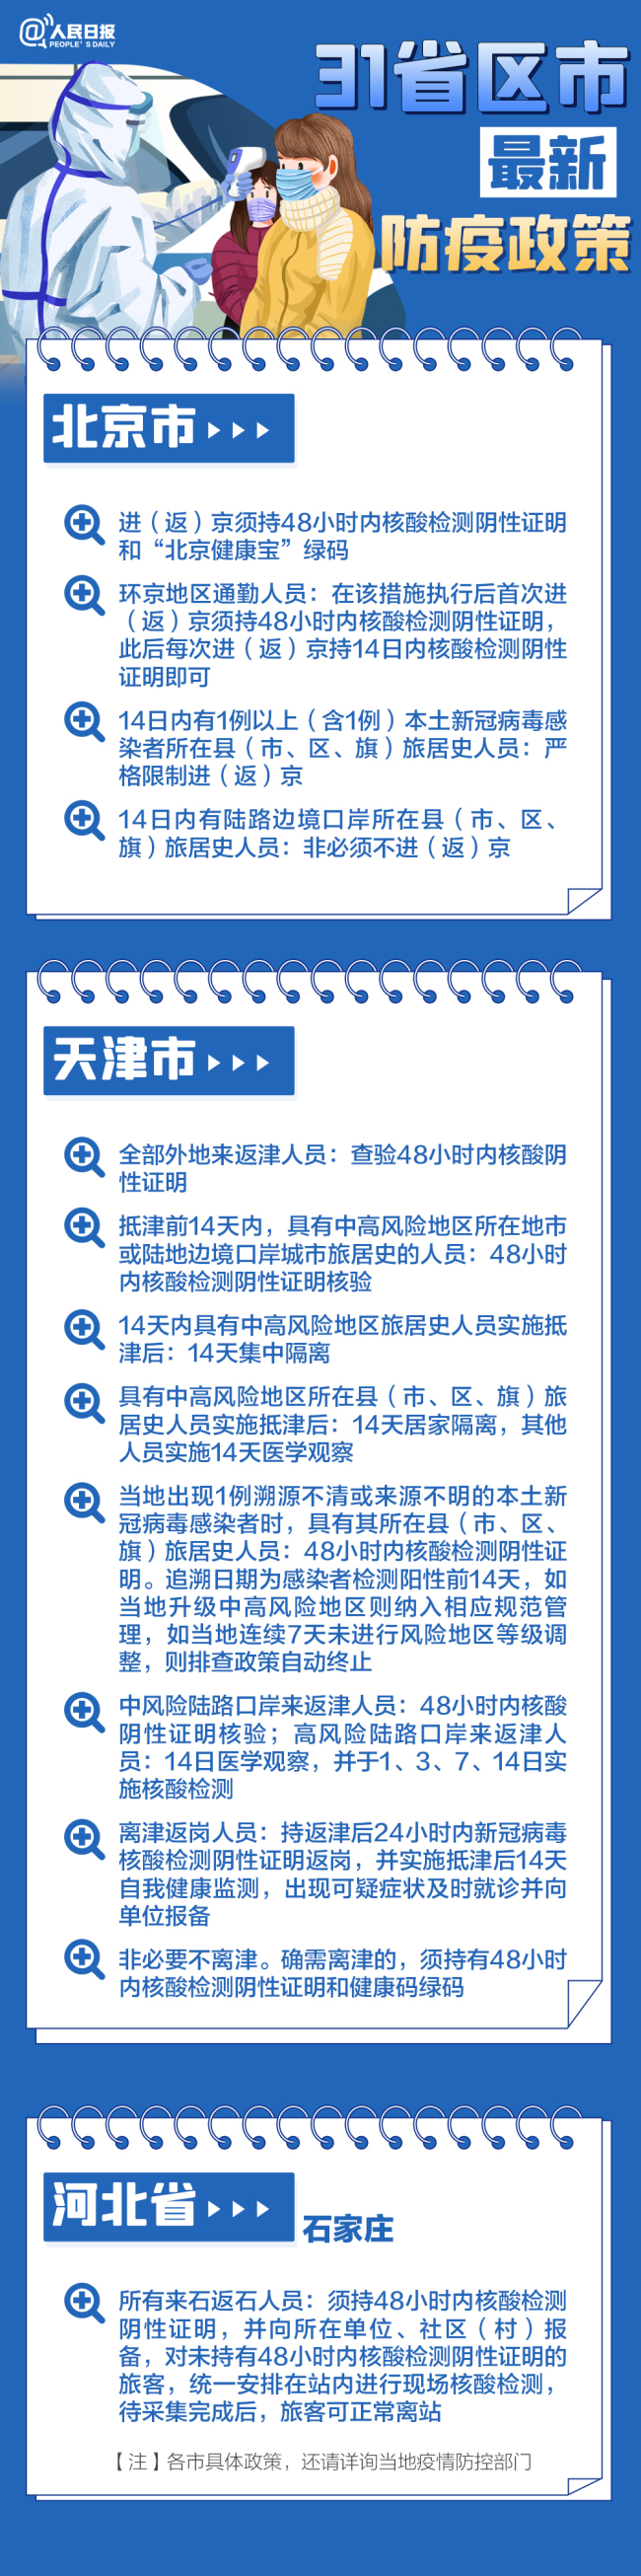 河南郑州：非生活必需的休闲娱乐场所暂停营业 - 1stekBet - 百度评论 百度热点快讯